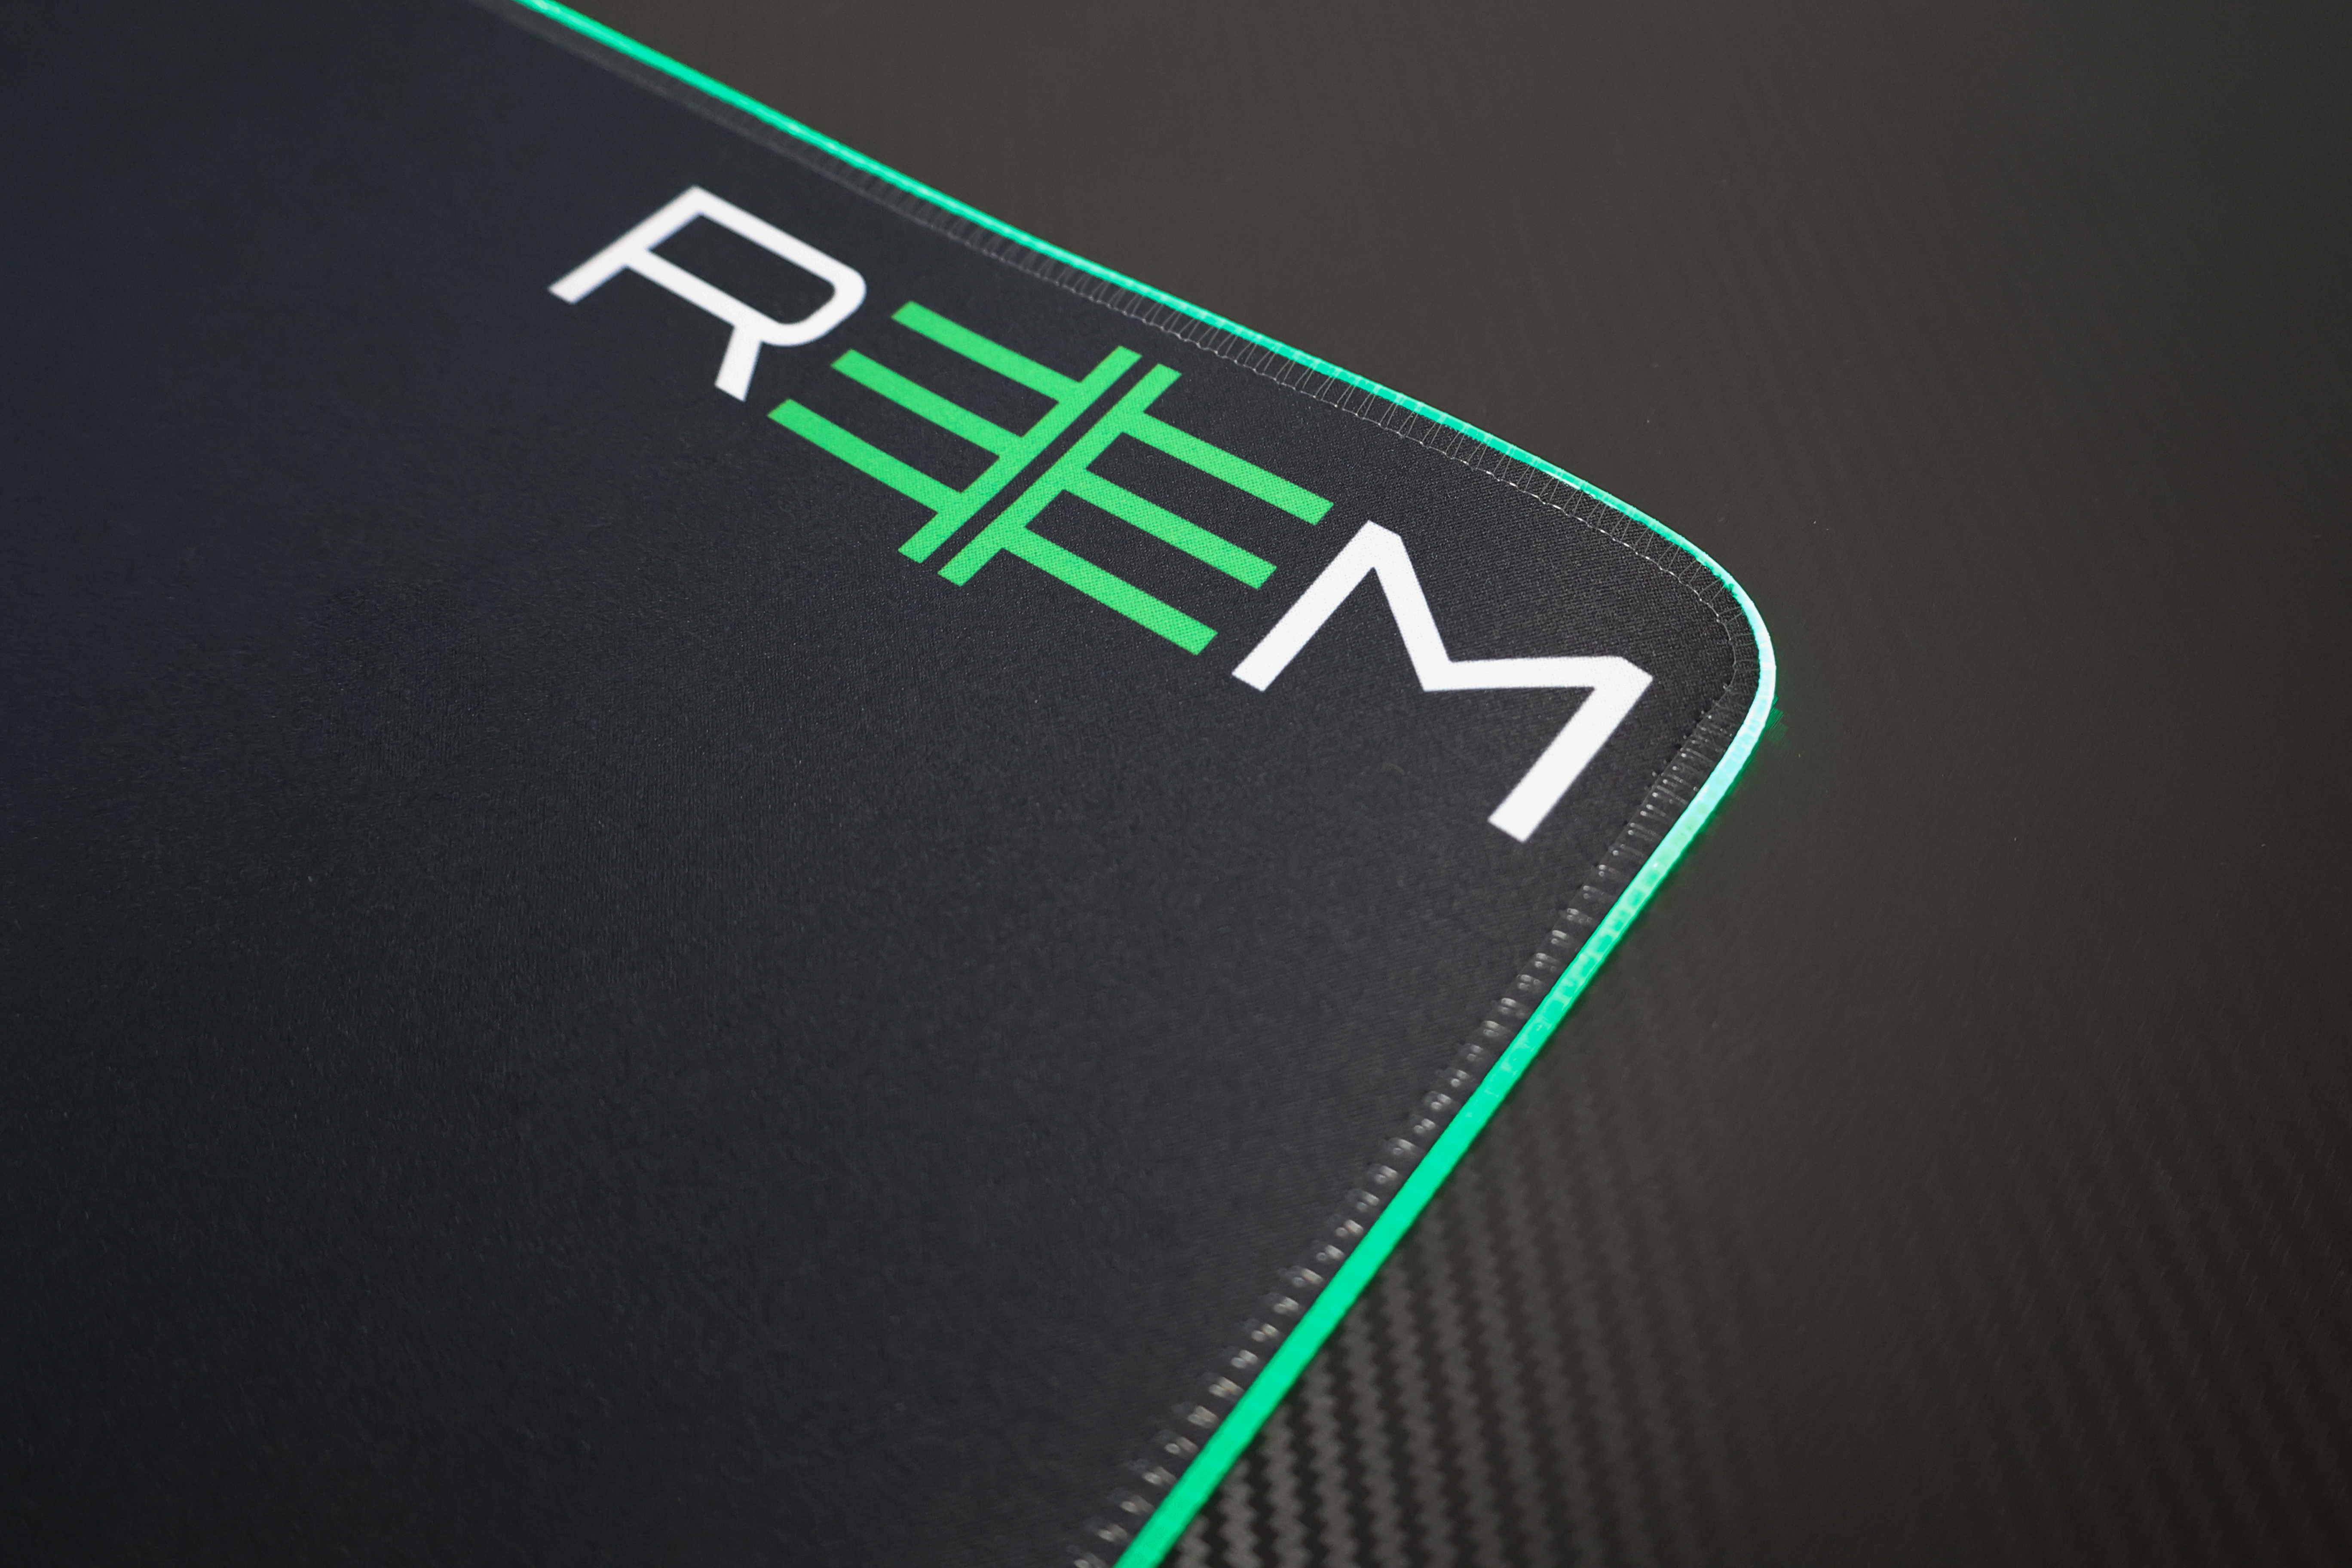 REEM PAD RGB Gaming (0,3 cm) Mauspad cm x 80